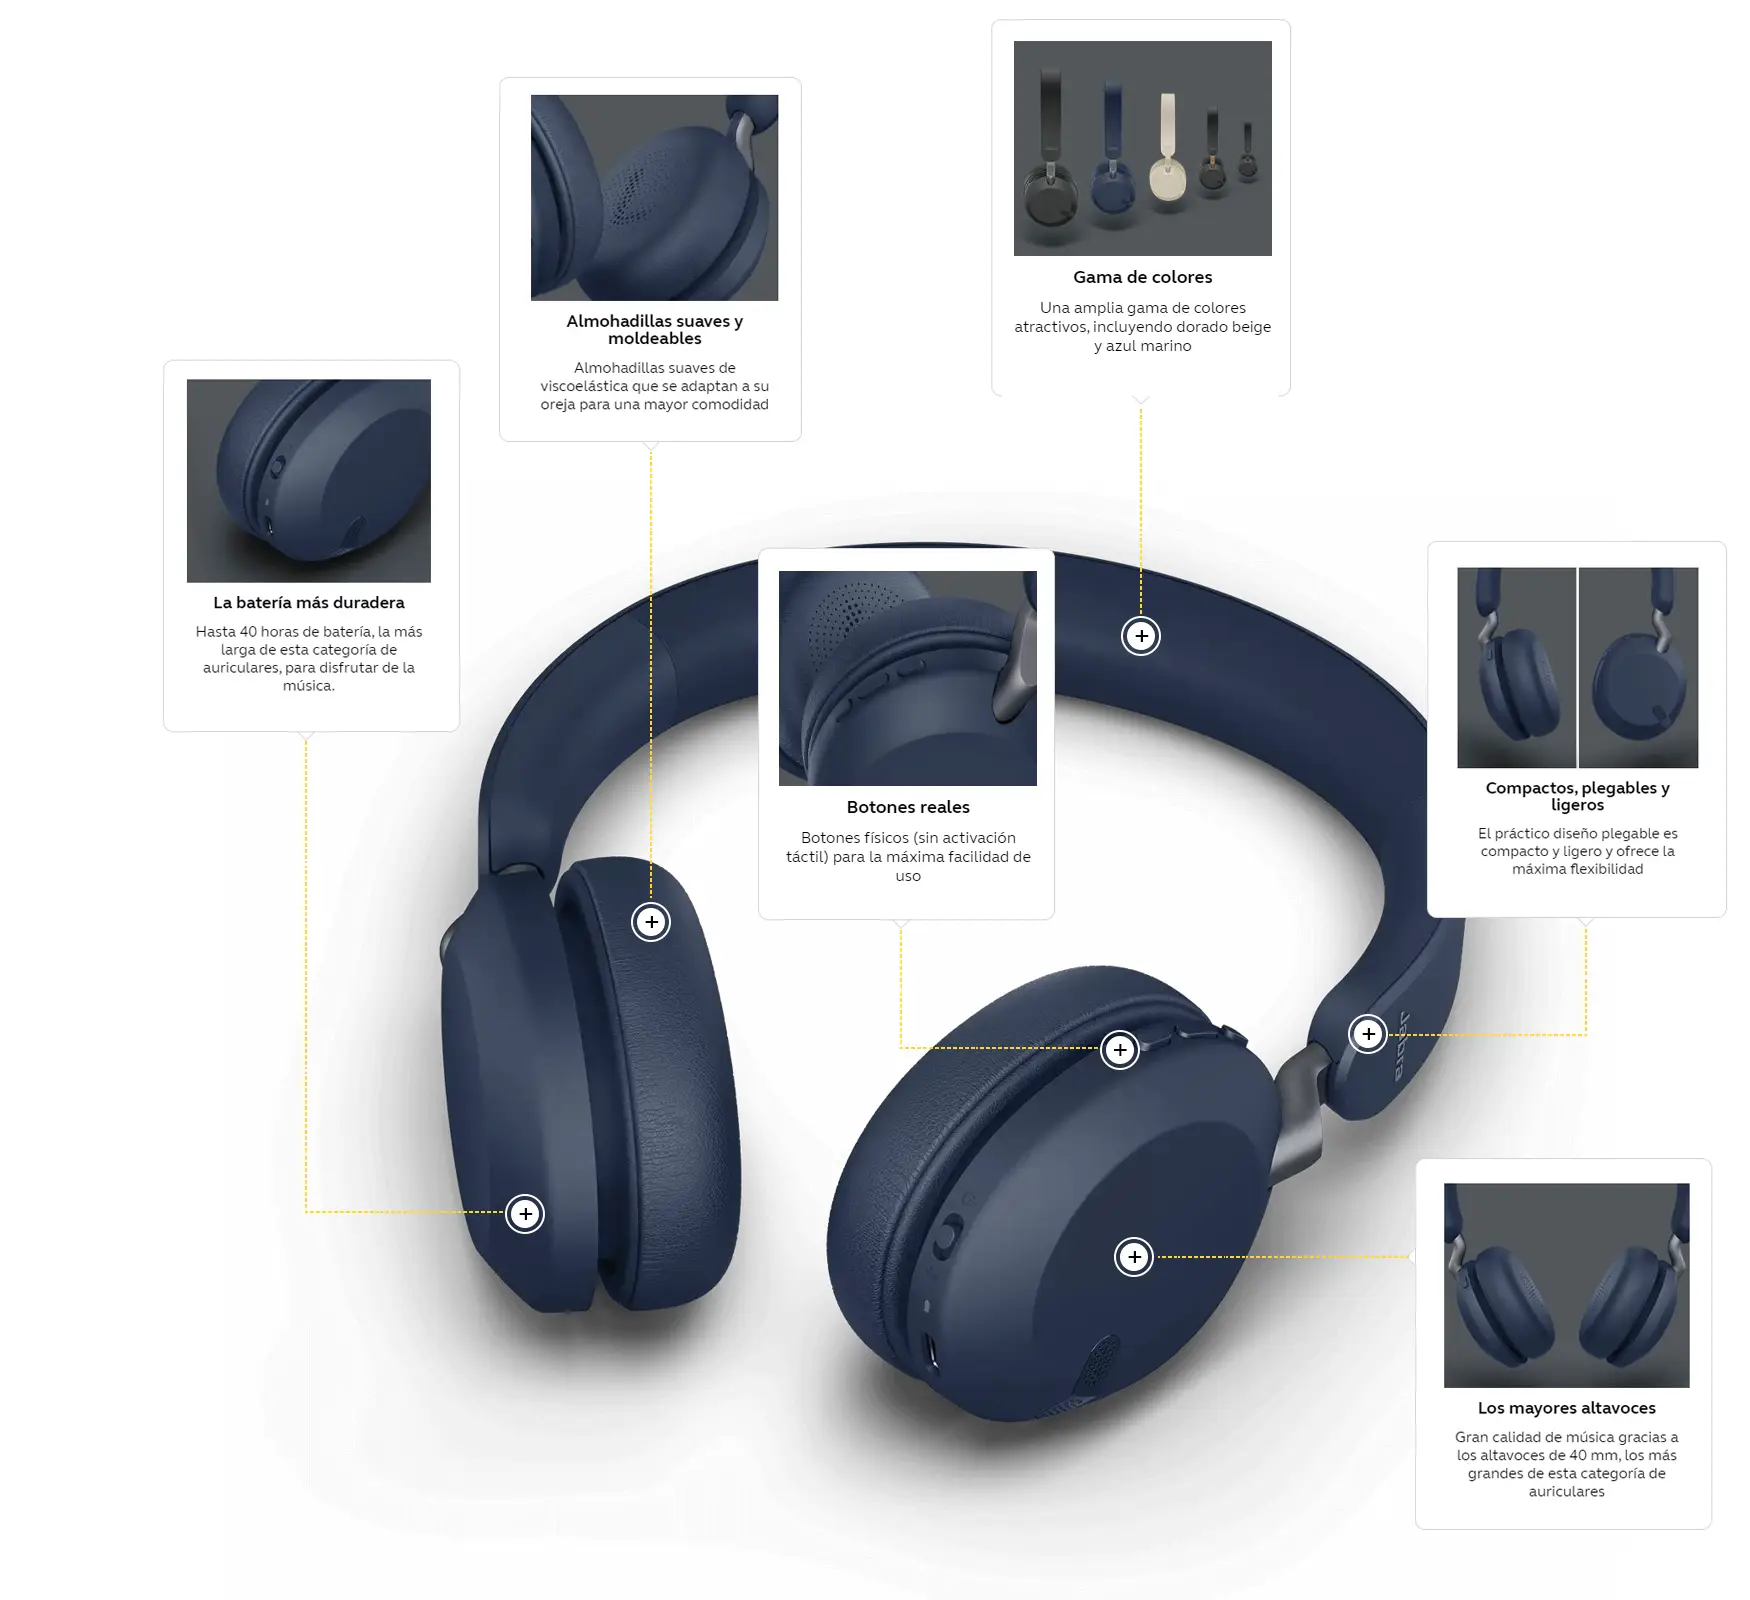 Buena autonomía, compactos y ligeros: estos auriculares están en